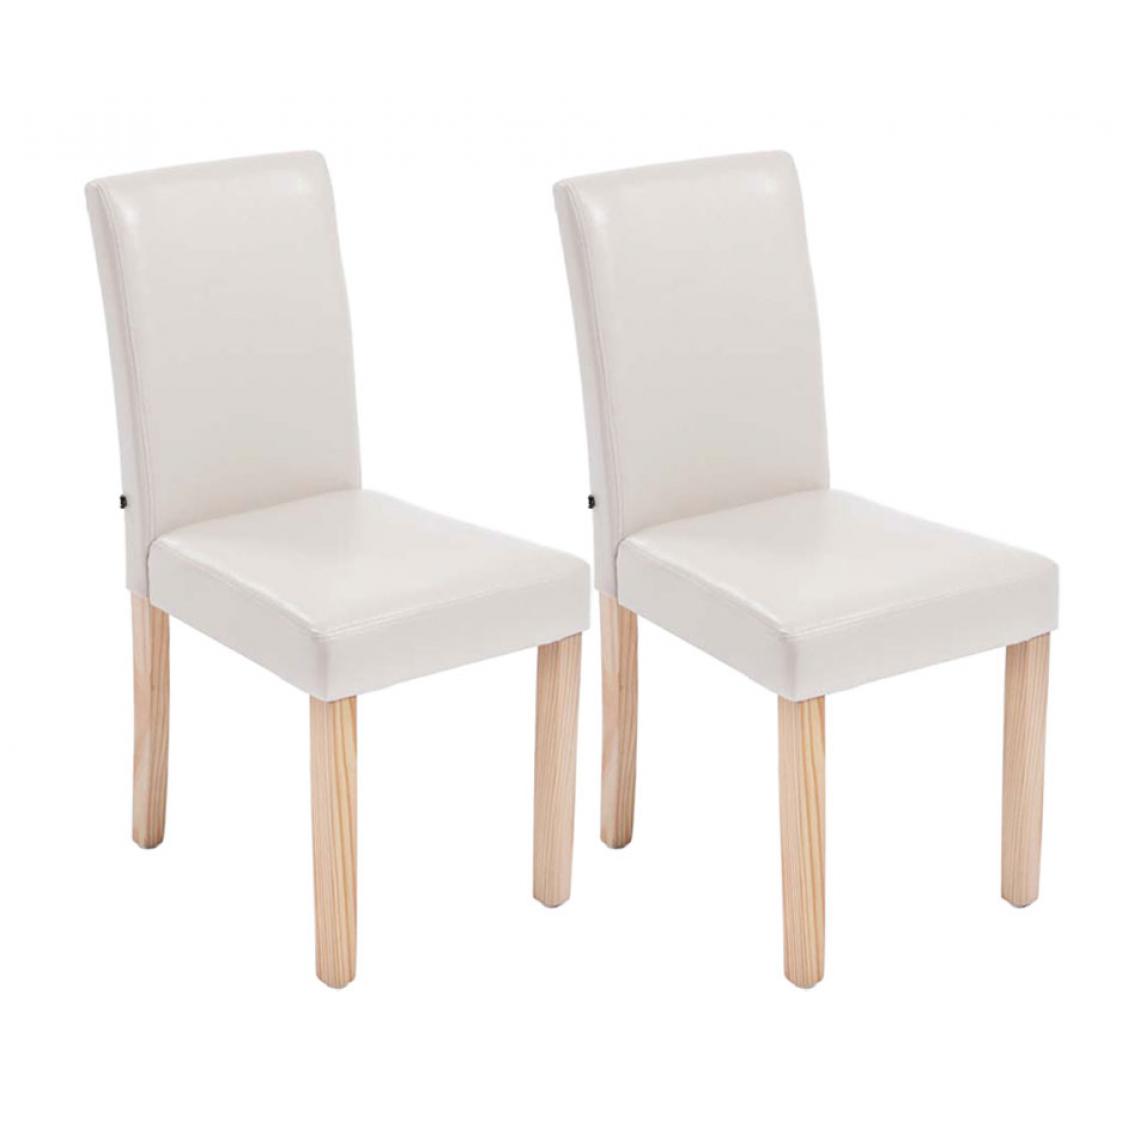 Icaverne - Stylé Lot de 2 chaises de salle à manger ligne Rabat natura couleur crème - Chaises